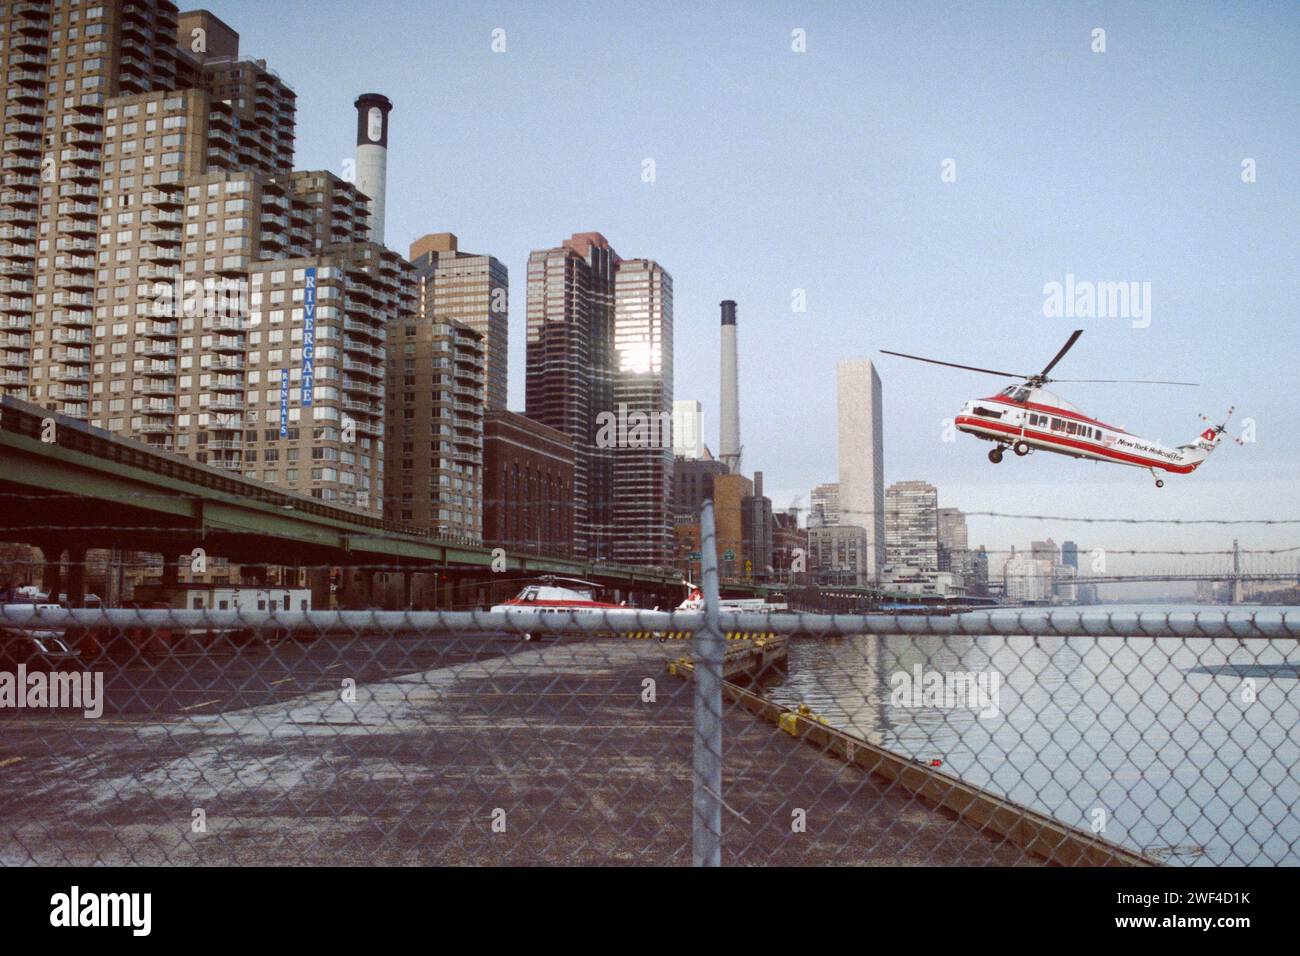 New York City, New York, USA – 1. Dezember 1991: Ein norriges Filmfoto einer New York Helicopter Company Sikorsky S-58, die auf dem East 34th Street Heliport in Manhattan landet. Stockfoto